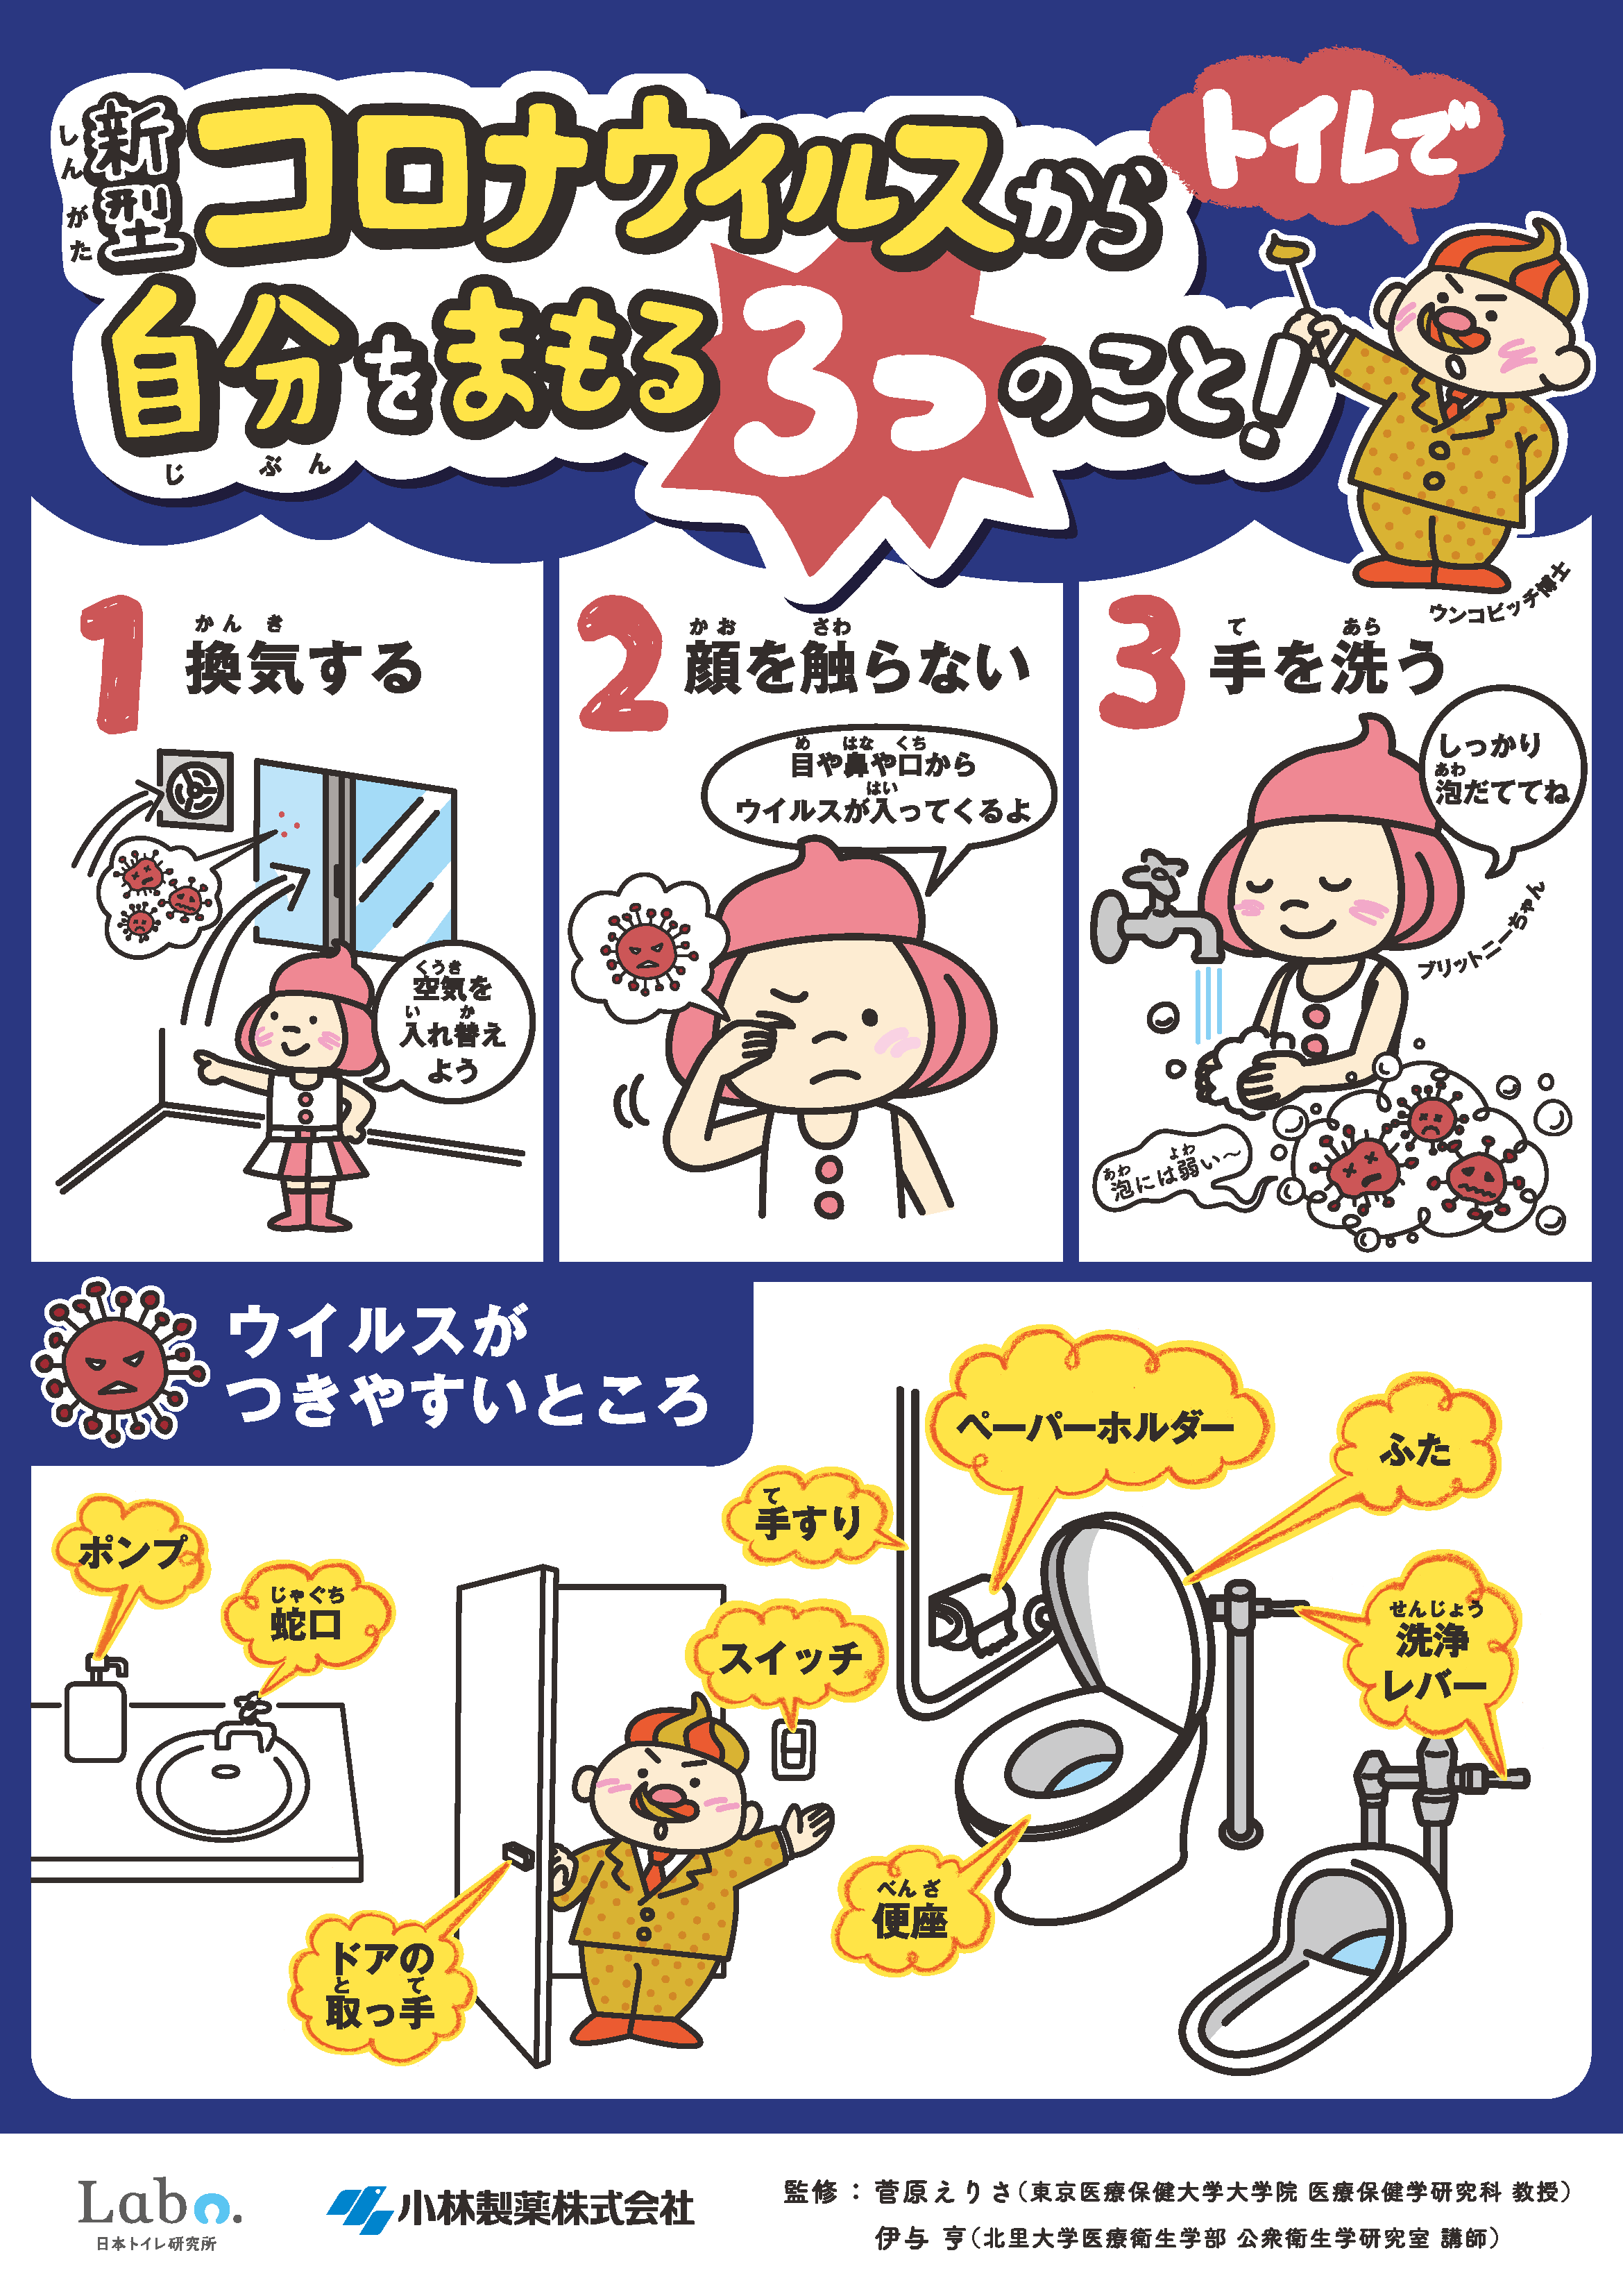 ニュースリリース 新型コロナウイルスから生徒 児童を守りたい 学校再開に向け トイレからの感染を防ぐ啓発ツールを作成しました 日本トイレ研究所 Japan Toilet Labo